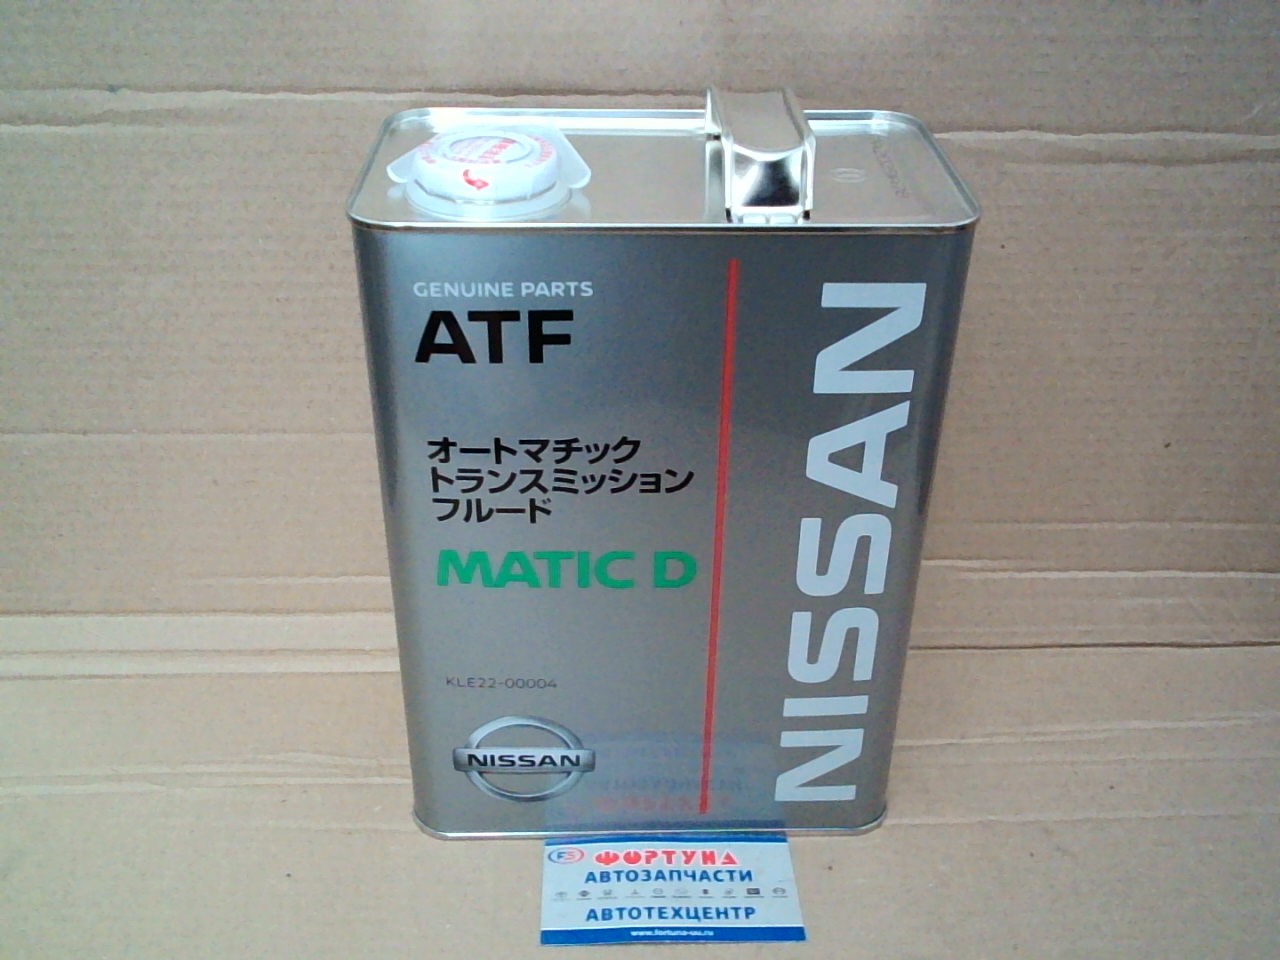 Масло NISSAN ATF Matic Fluid-D [KLE22-00004] (Ж/Б) /синтетическое/(4л)(услуга по замене масла) на  